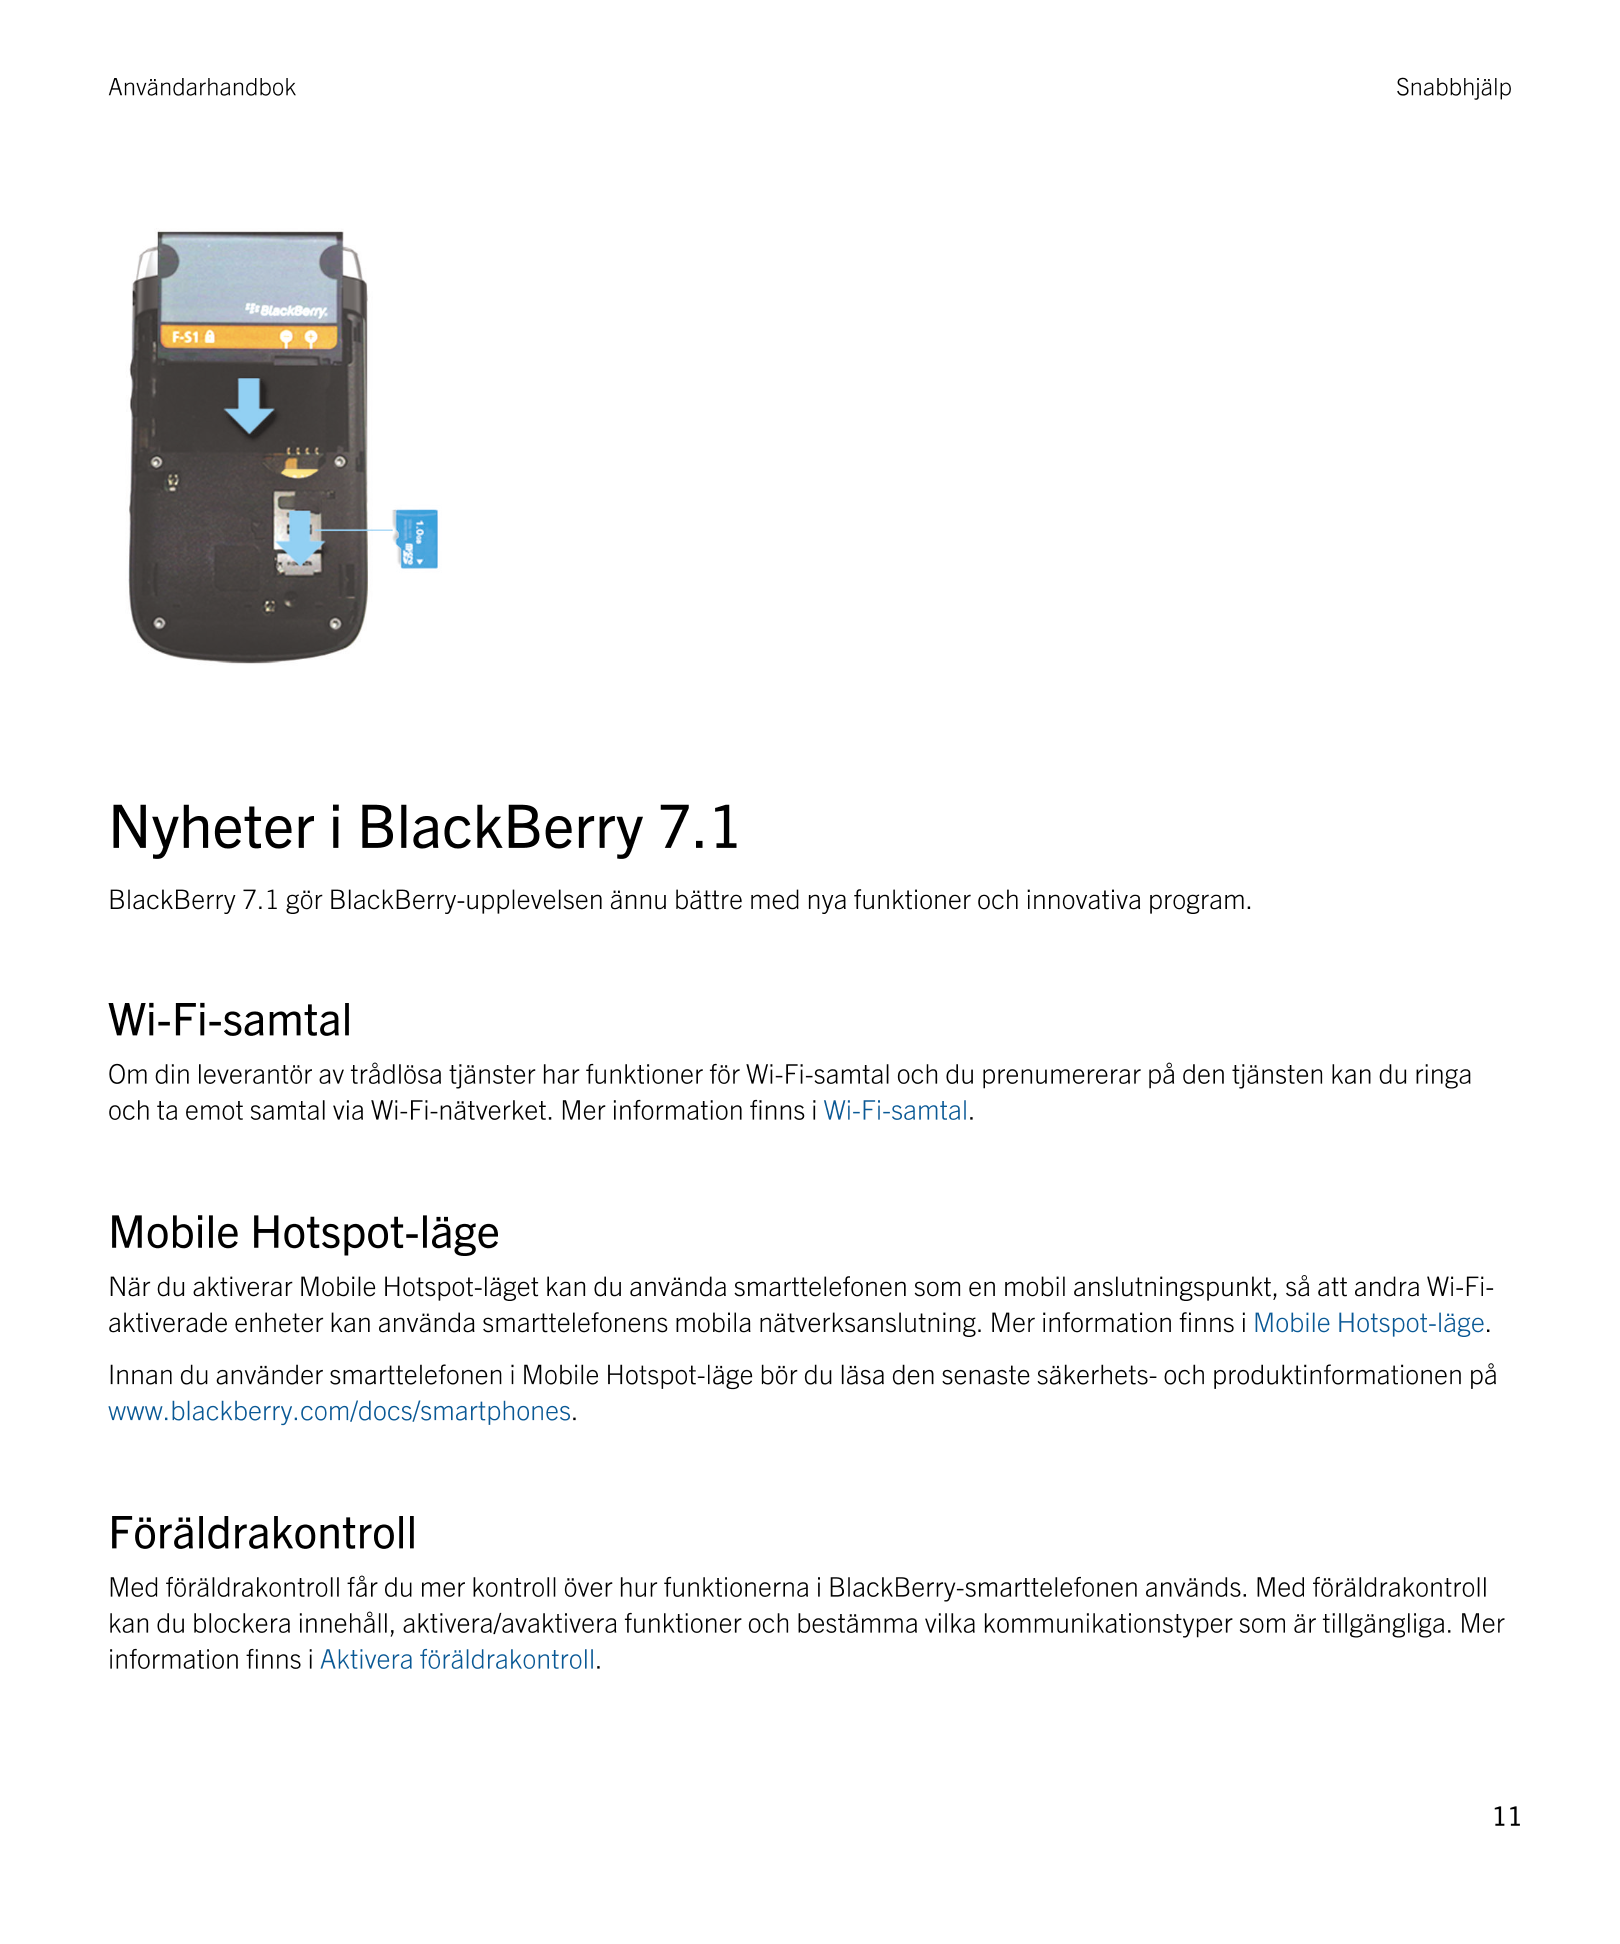 Användarhandbok Snabbhjälp
Nyheter i  BlackBerry 7.1
BlackBerry 7.1 gör  BlackBerry-upplevelsen ännu bättre med nya funktioner o